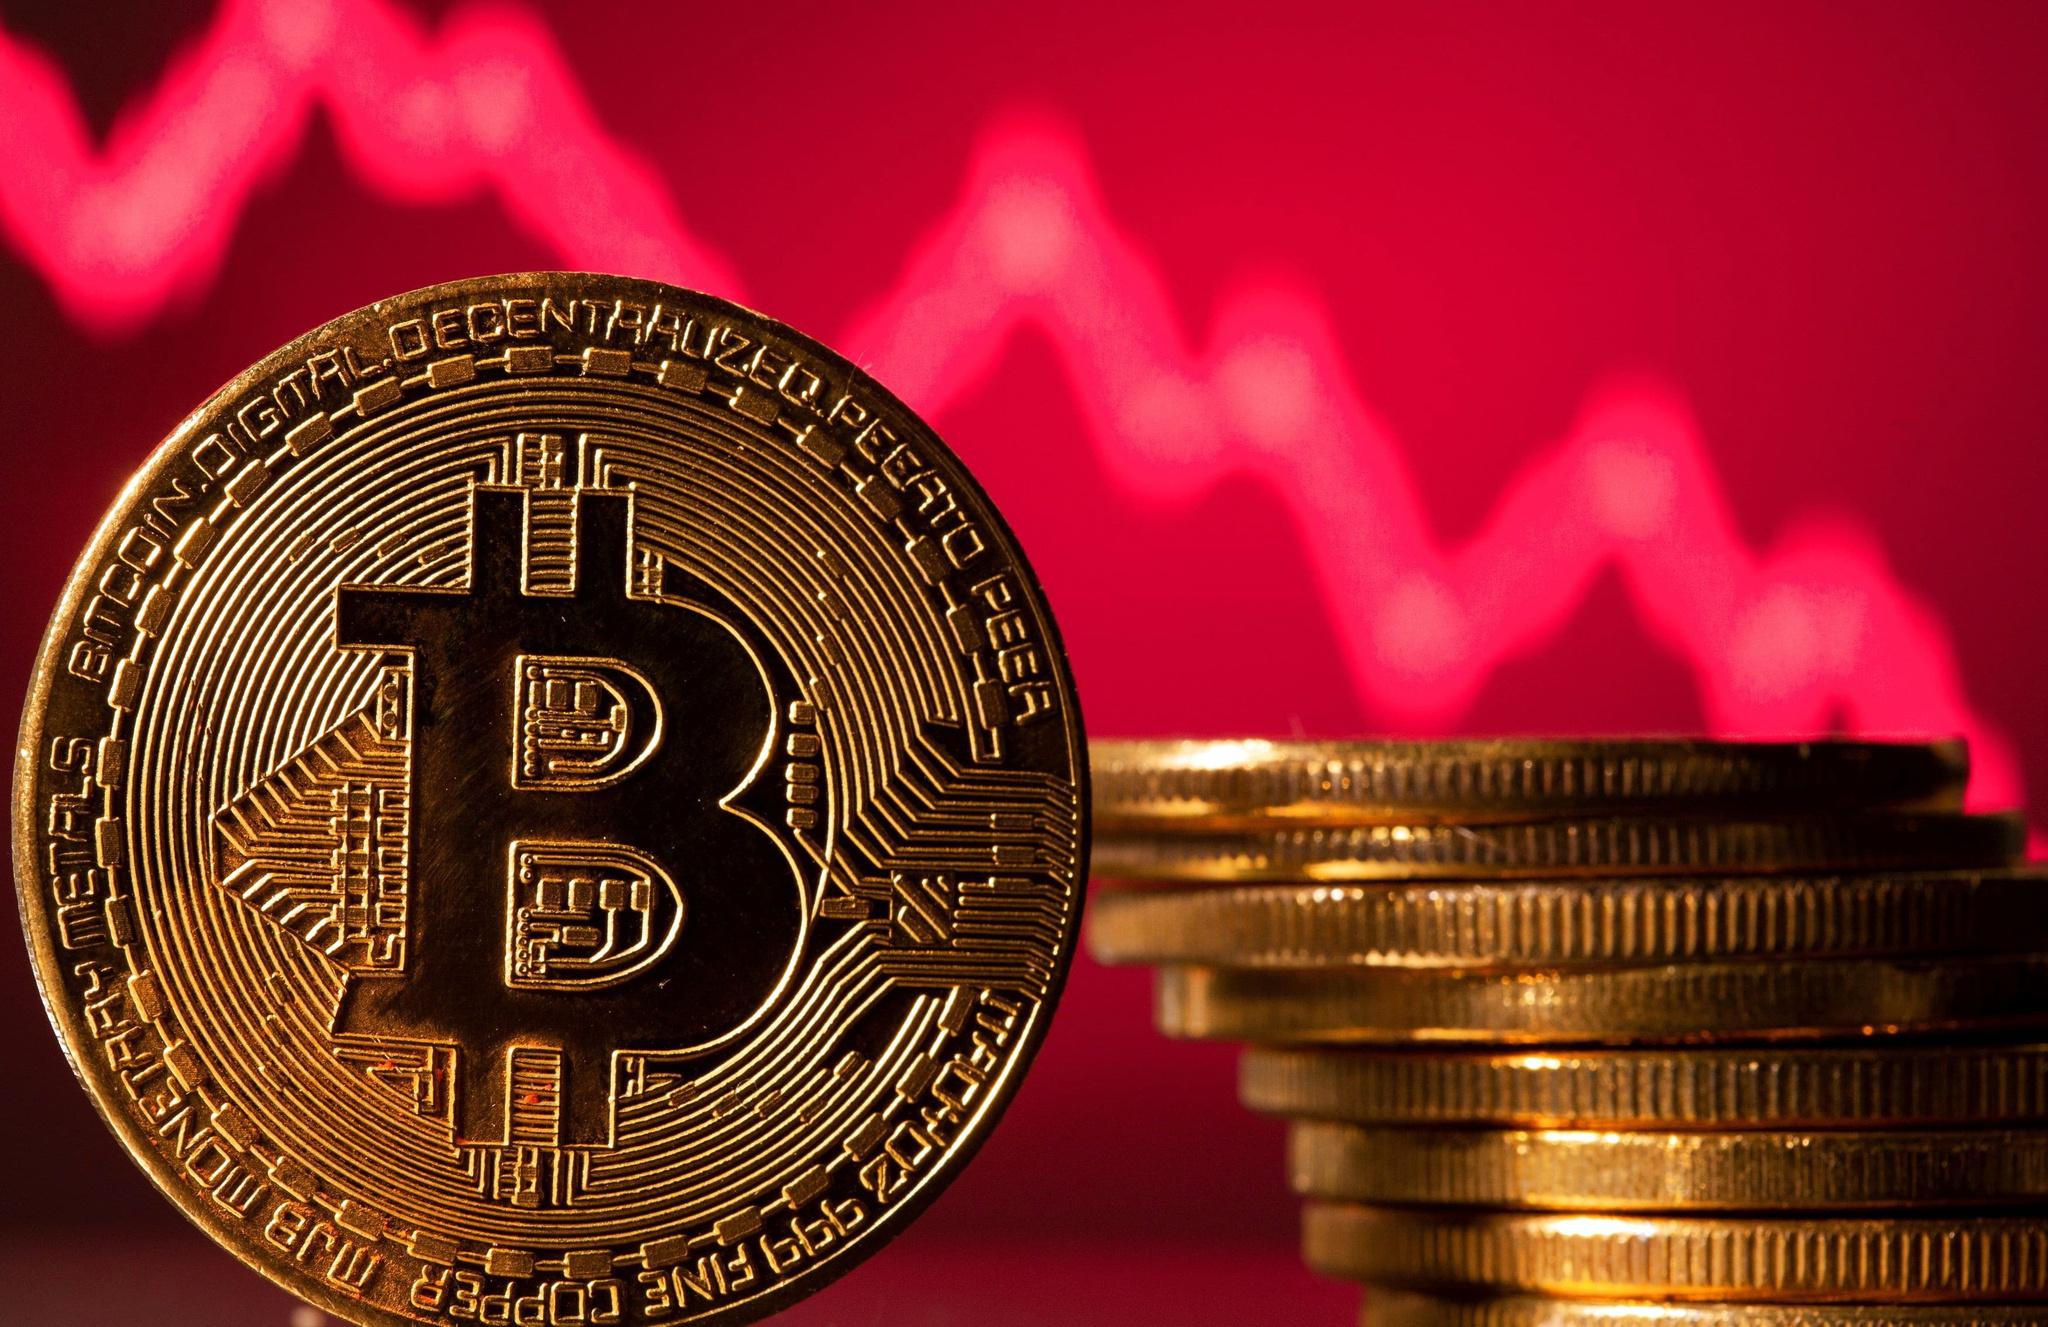 Giá Bitcoin đạt 50.000 Usd, ở Mức Cao Nhất Trong Hai Năm. Nhà Phân Tích Cho Biết Các Quỹ Etf Sắp Trở Thành Xu Hướng Chính